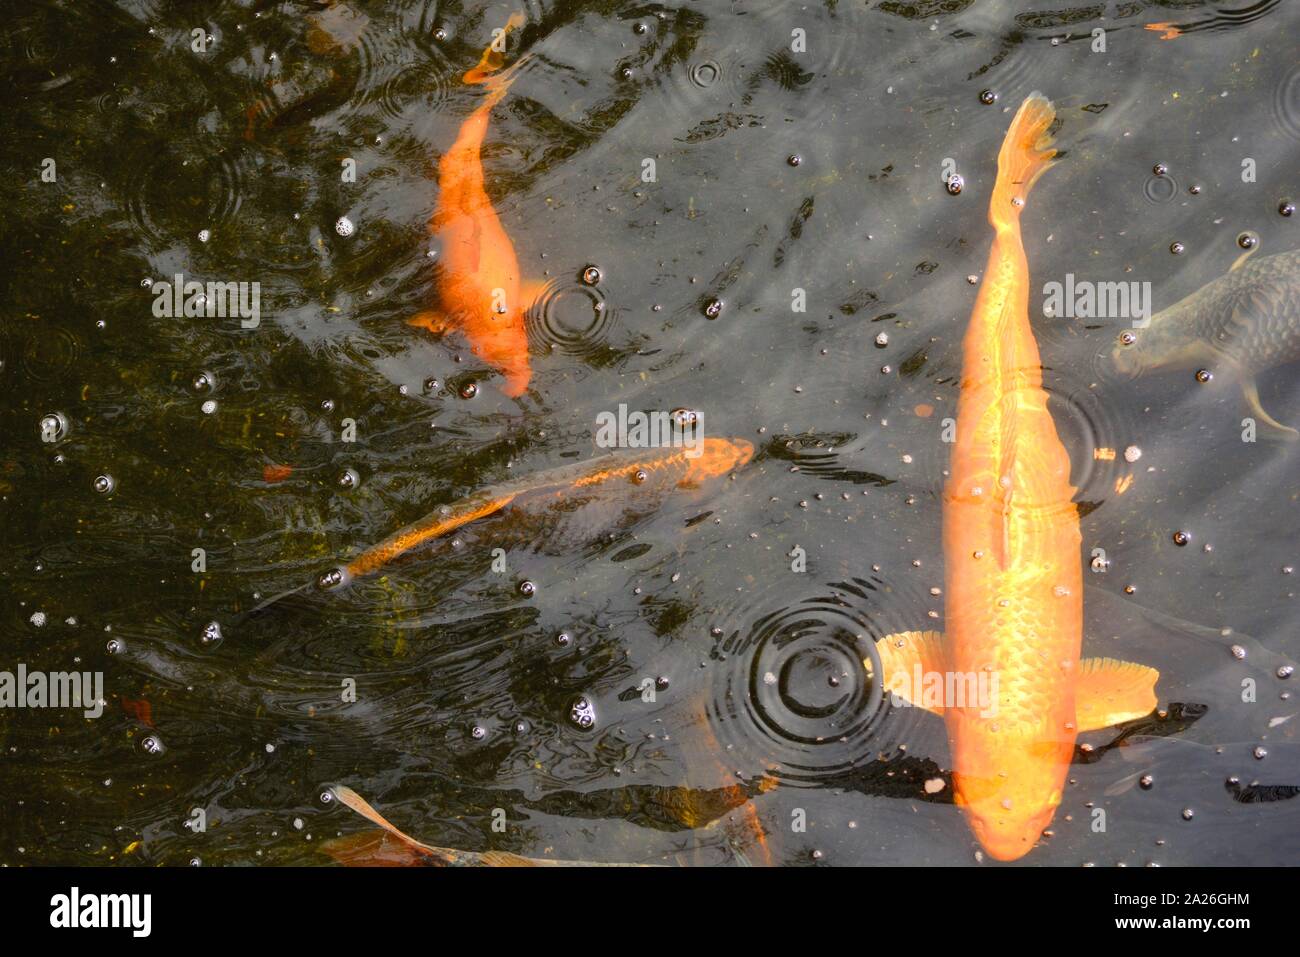 goldfish in a koi pond Stock Photo